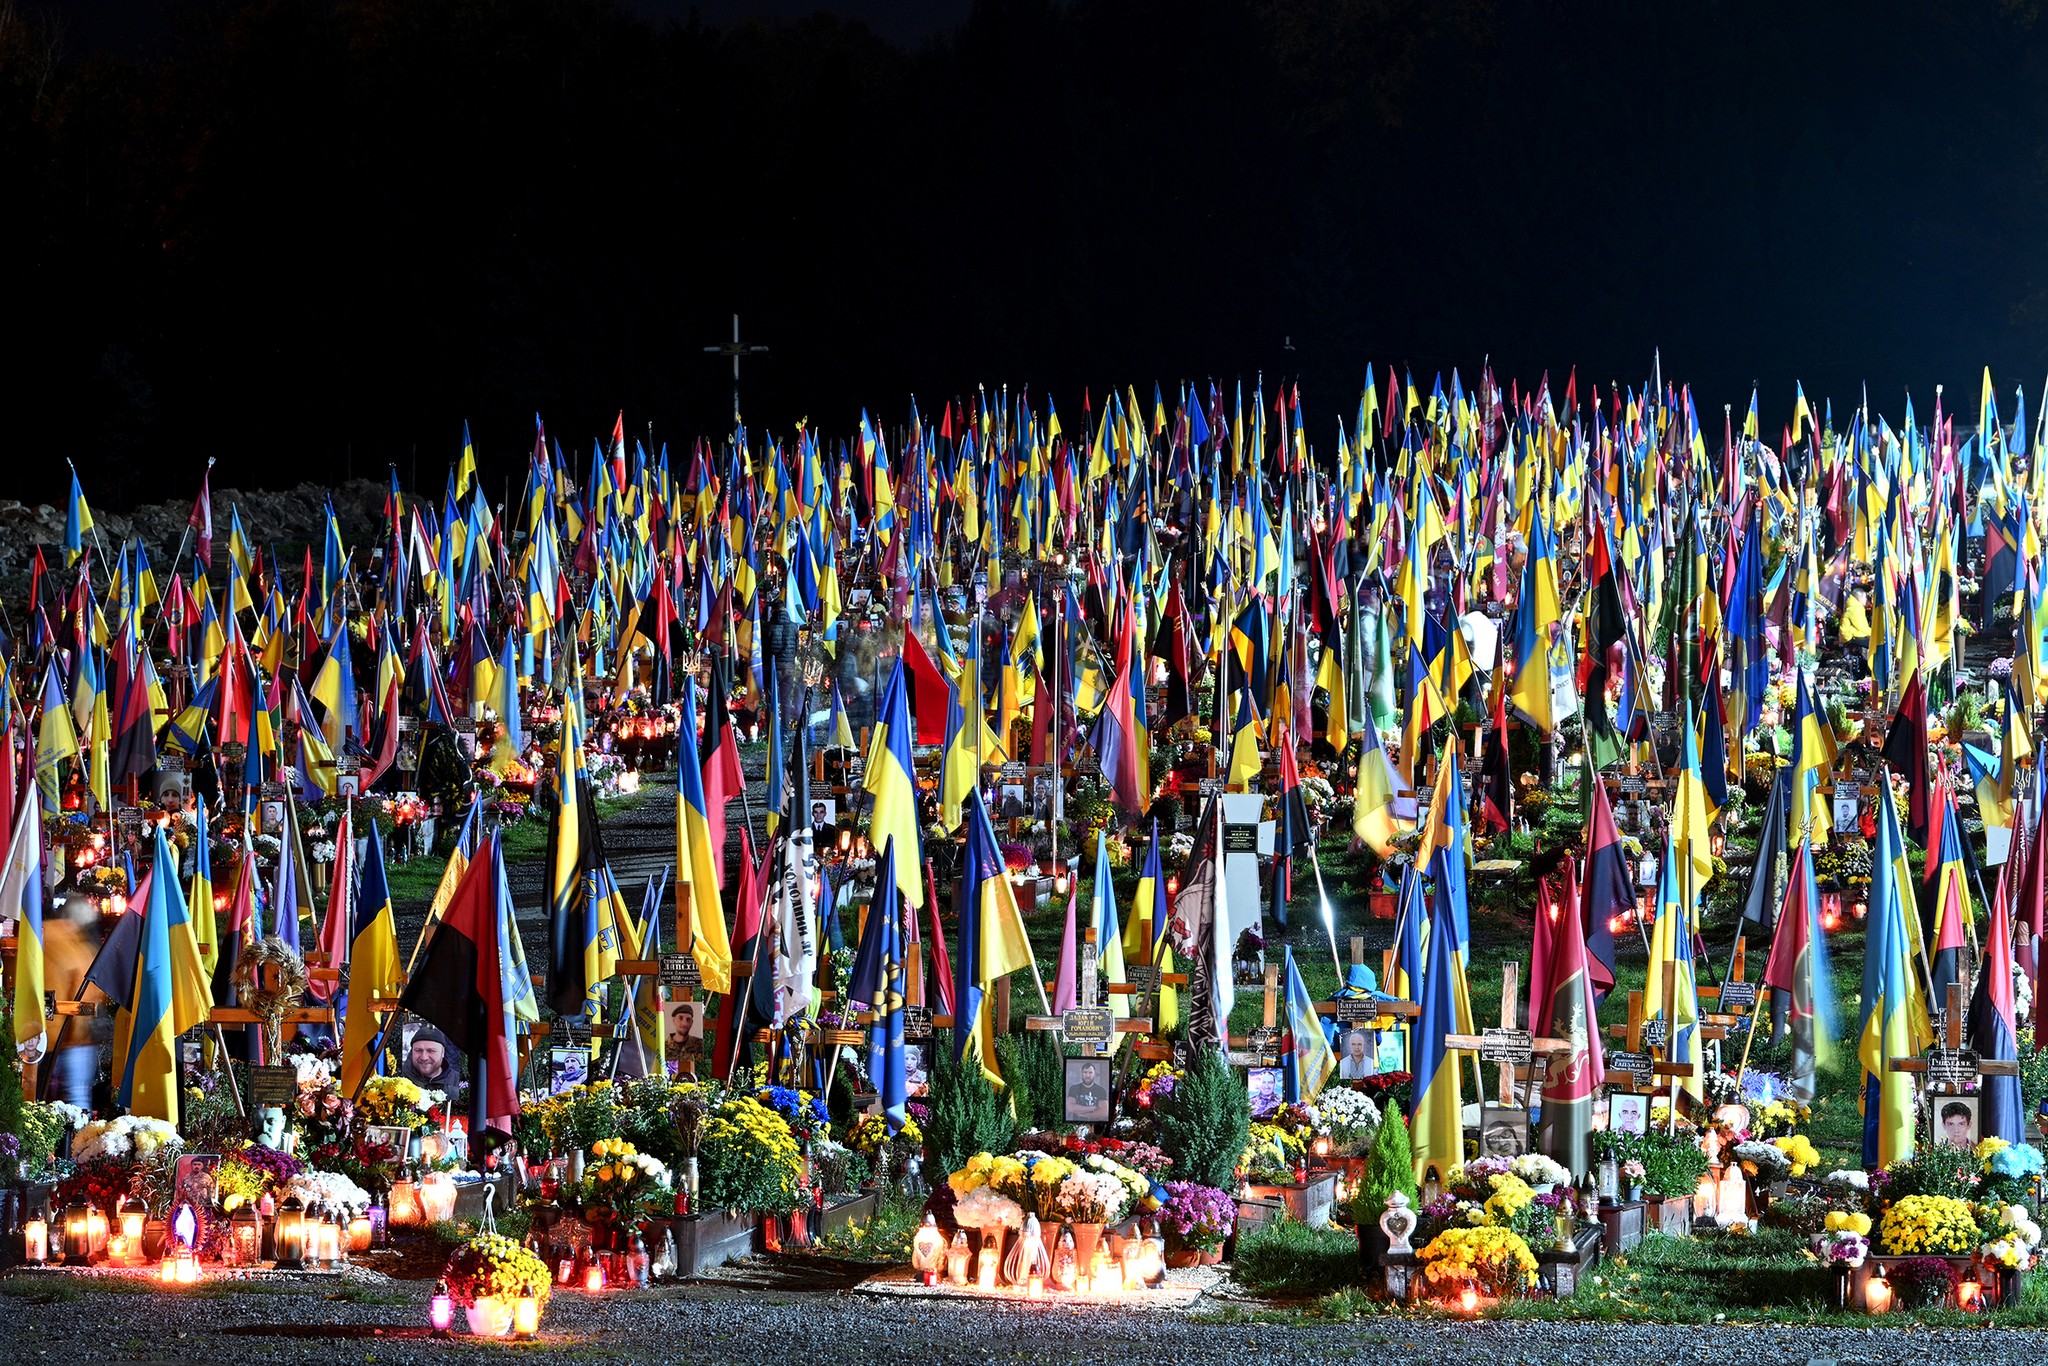 Marsove Pole (Mars Field) in Lviv, graves of Ukrainian fallen soldiers